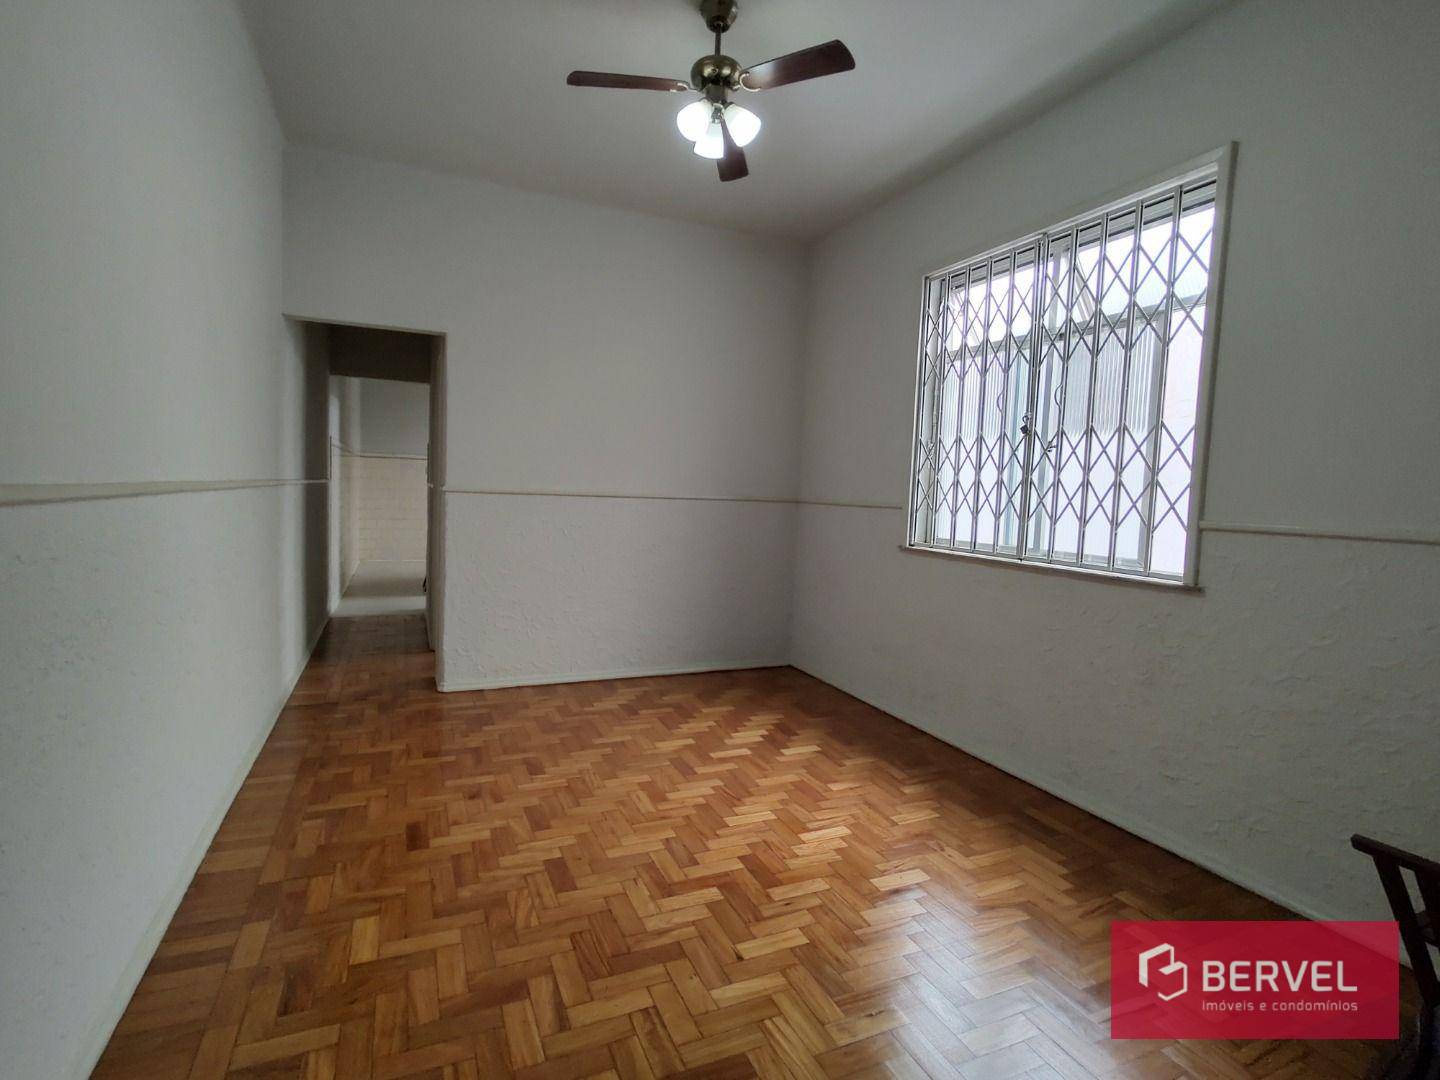 Apartamento em Riachuelo, Rio de Janeiro/RJ de 60m² 2 quartos para locação R$ 1.300,00/mes